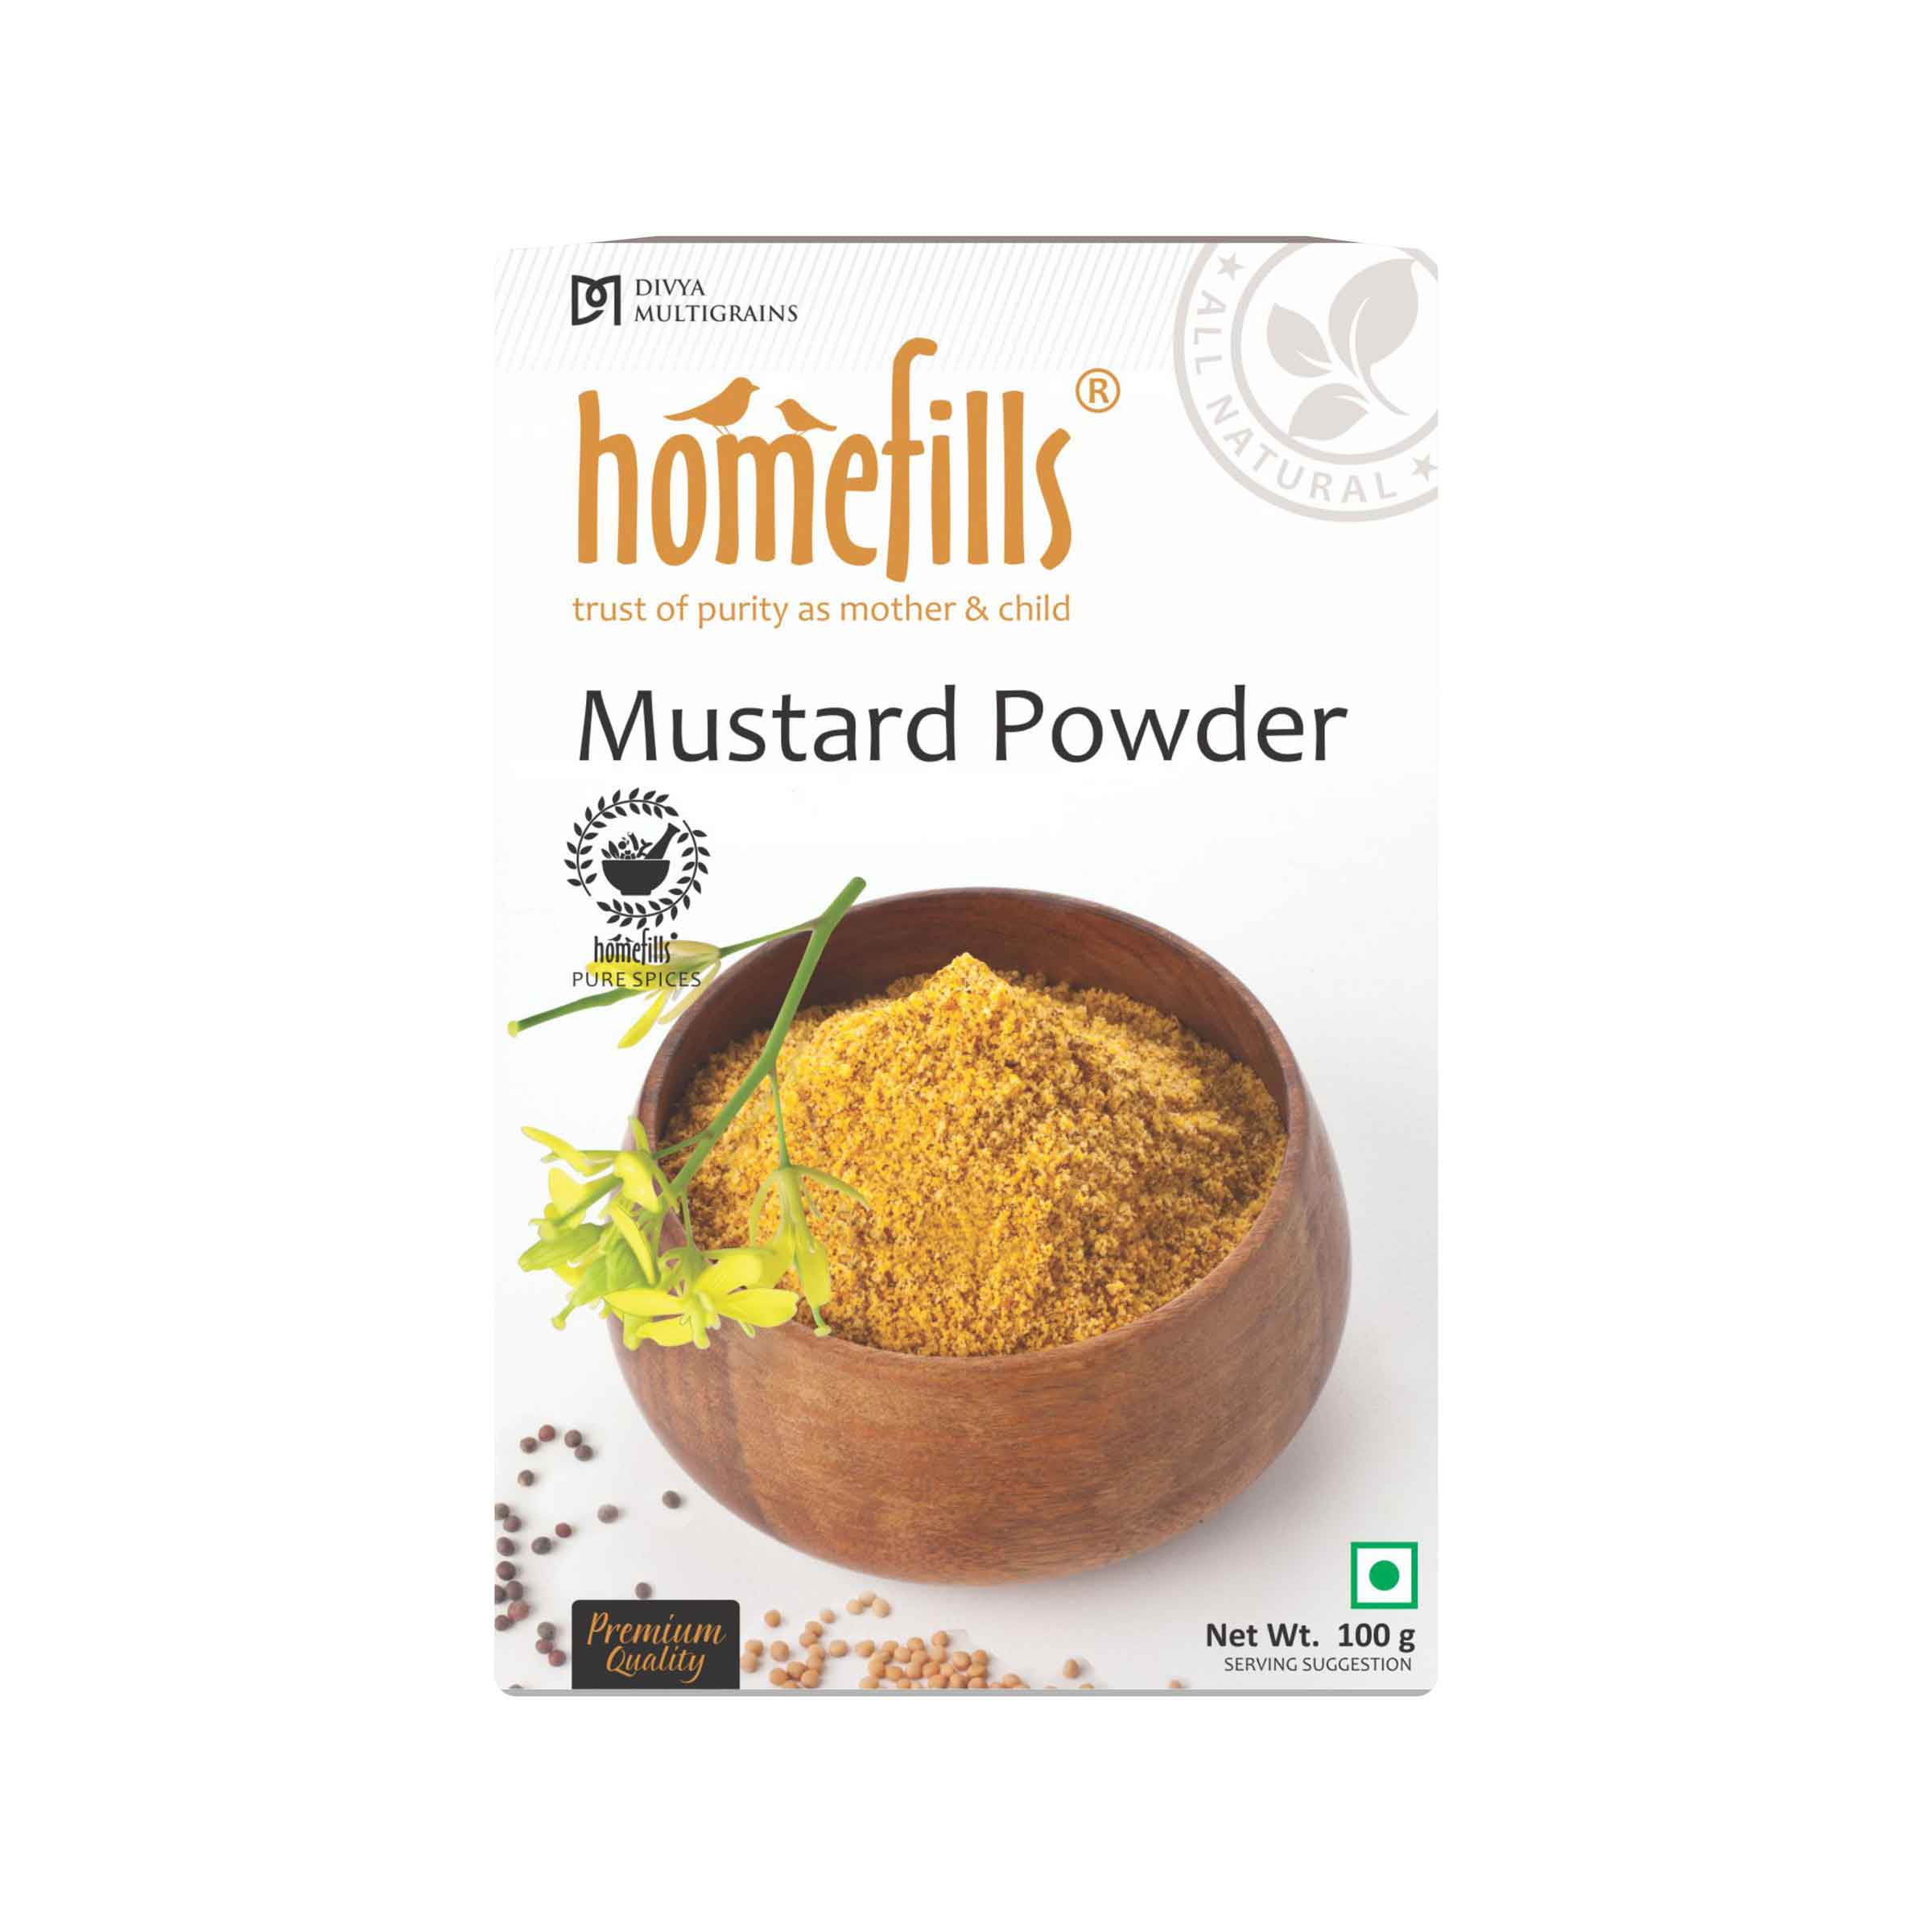 Homefills Mustard Powder